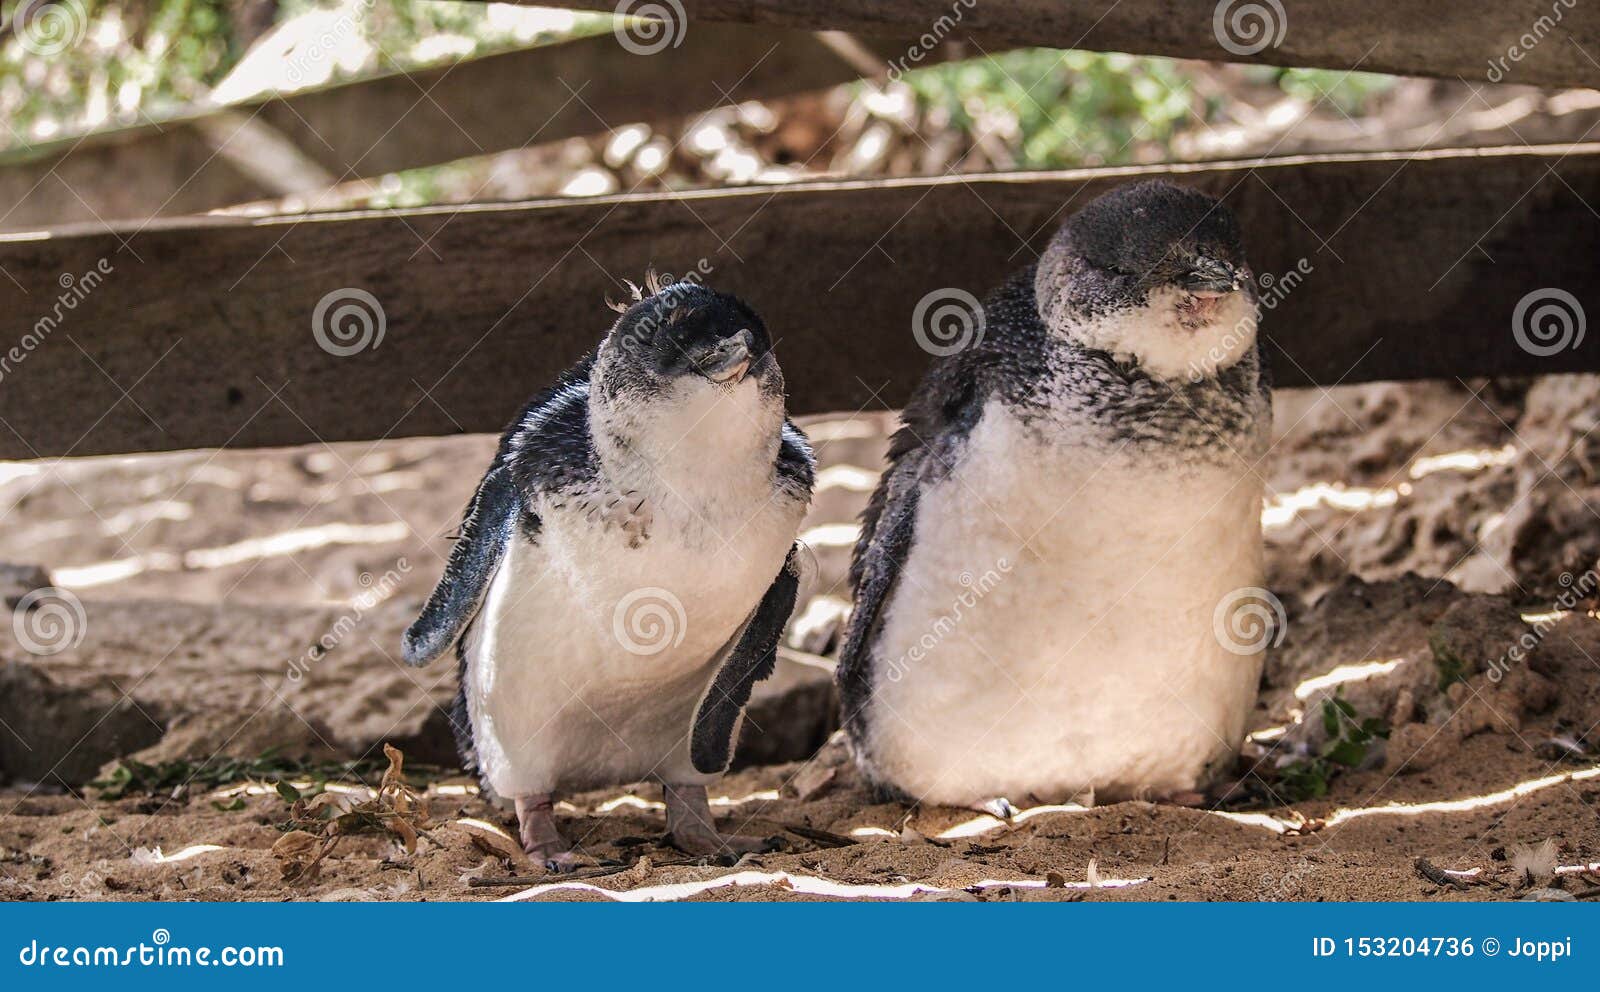 墨尔本 菲利普企鹅岛企鹅归巢门票（多种看台可选）,马蜂窝自由行 - 马蜂窝自由行